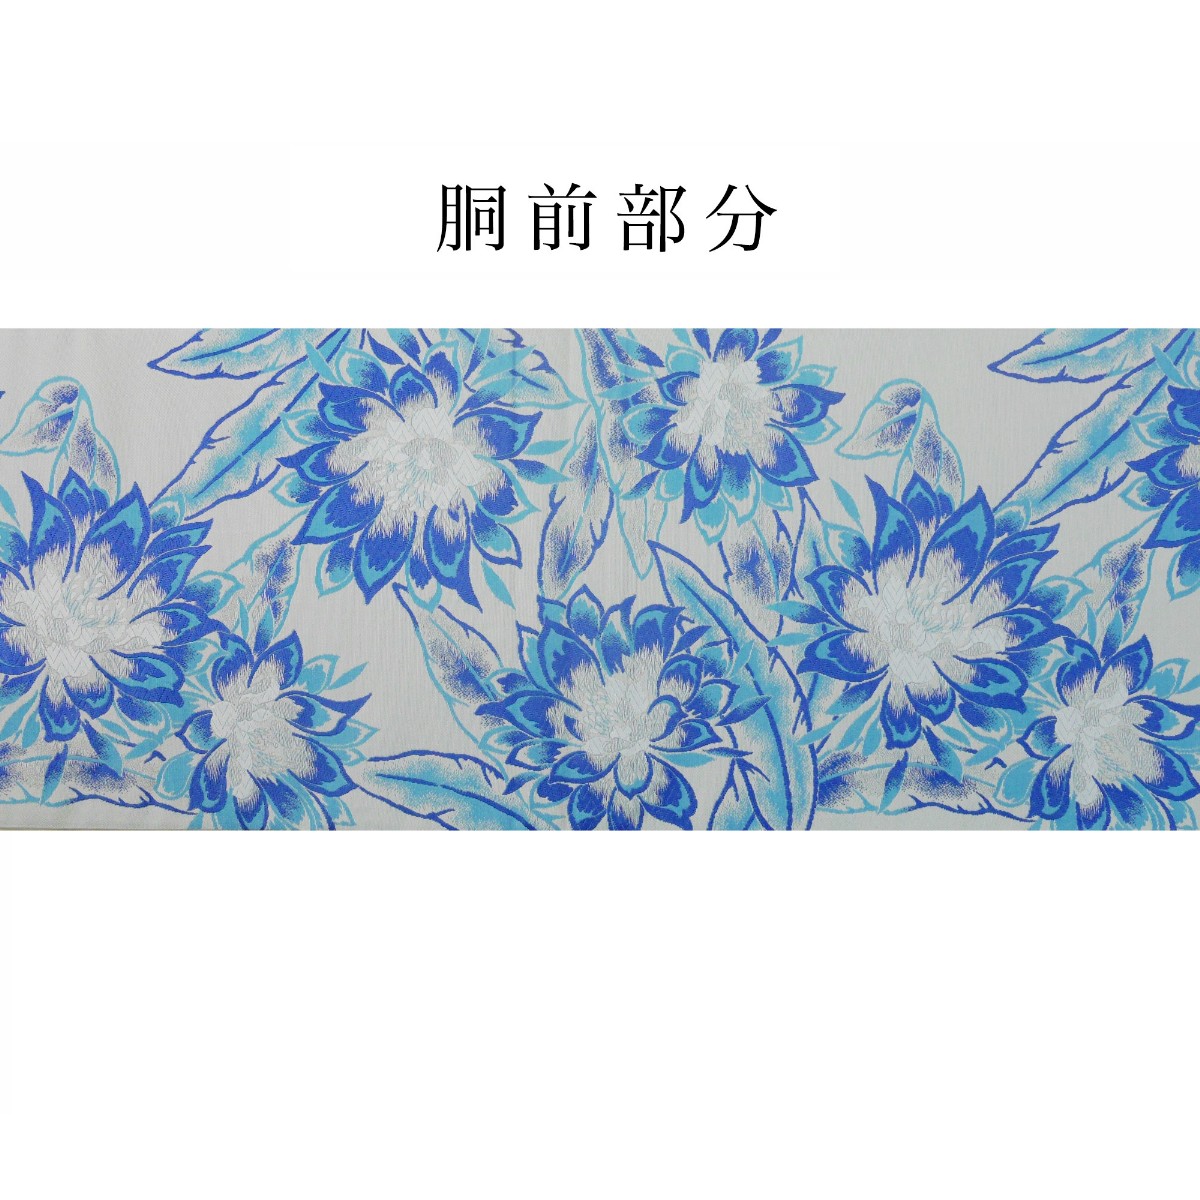 新品 西陣 帯 袋帯 青 ダリア 水色 仕立て上がり dhukuroobi46-